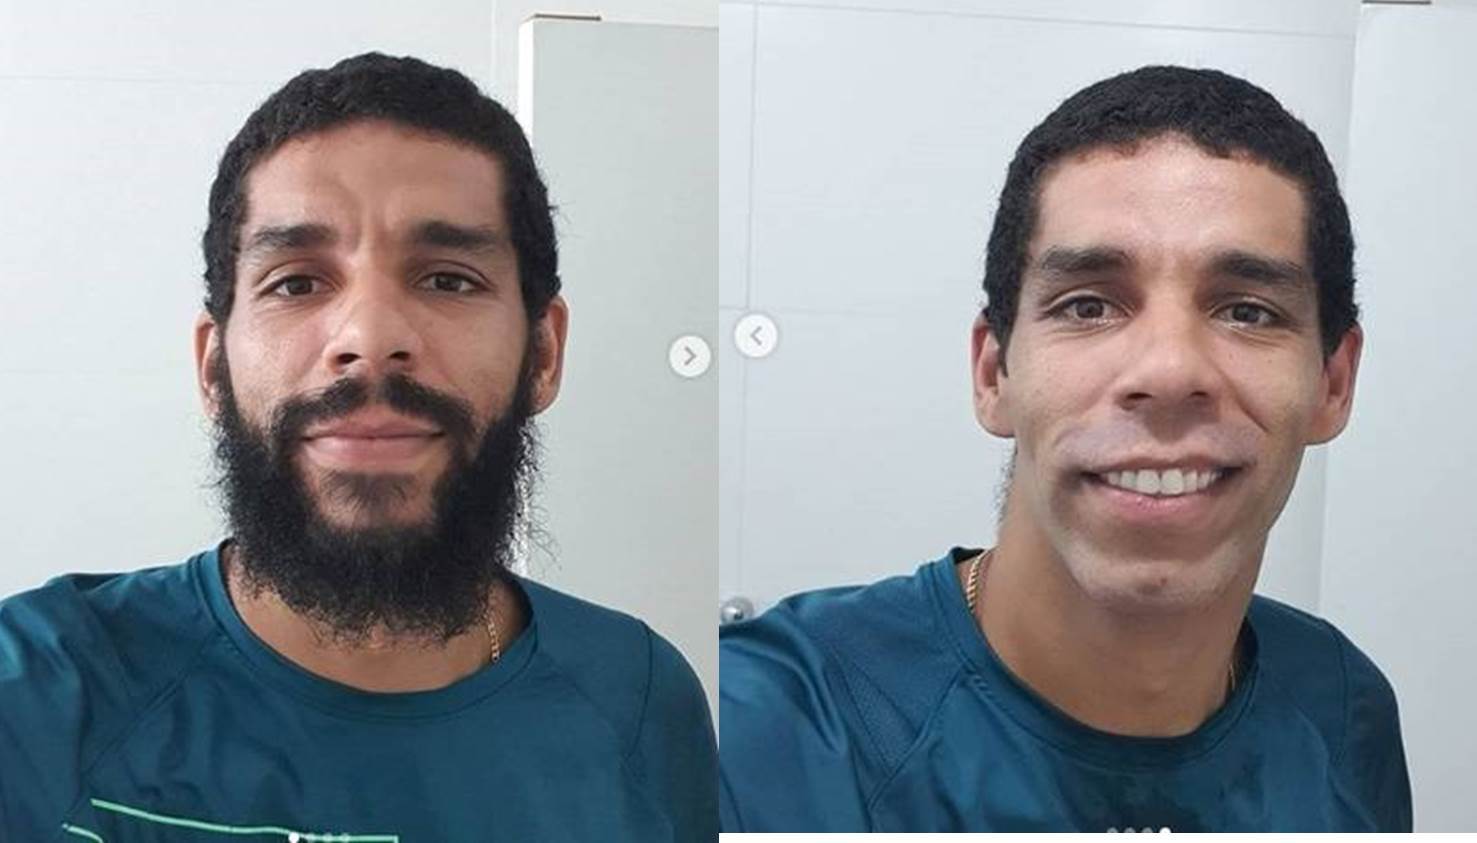 Wallace, jogador da seleção brasileira de vôlei, ficou bem diferente sem barba